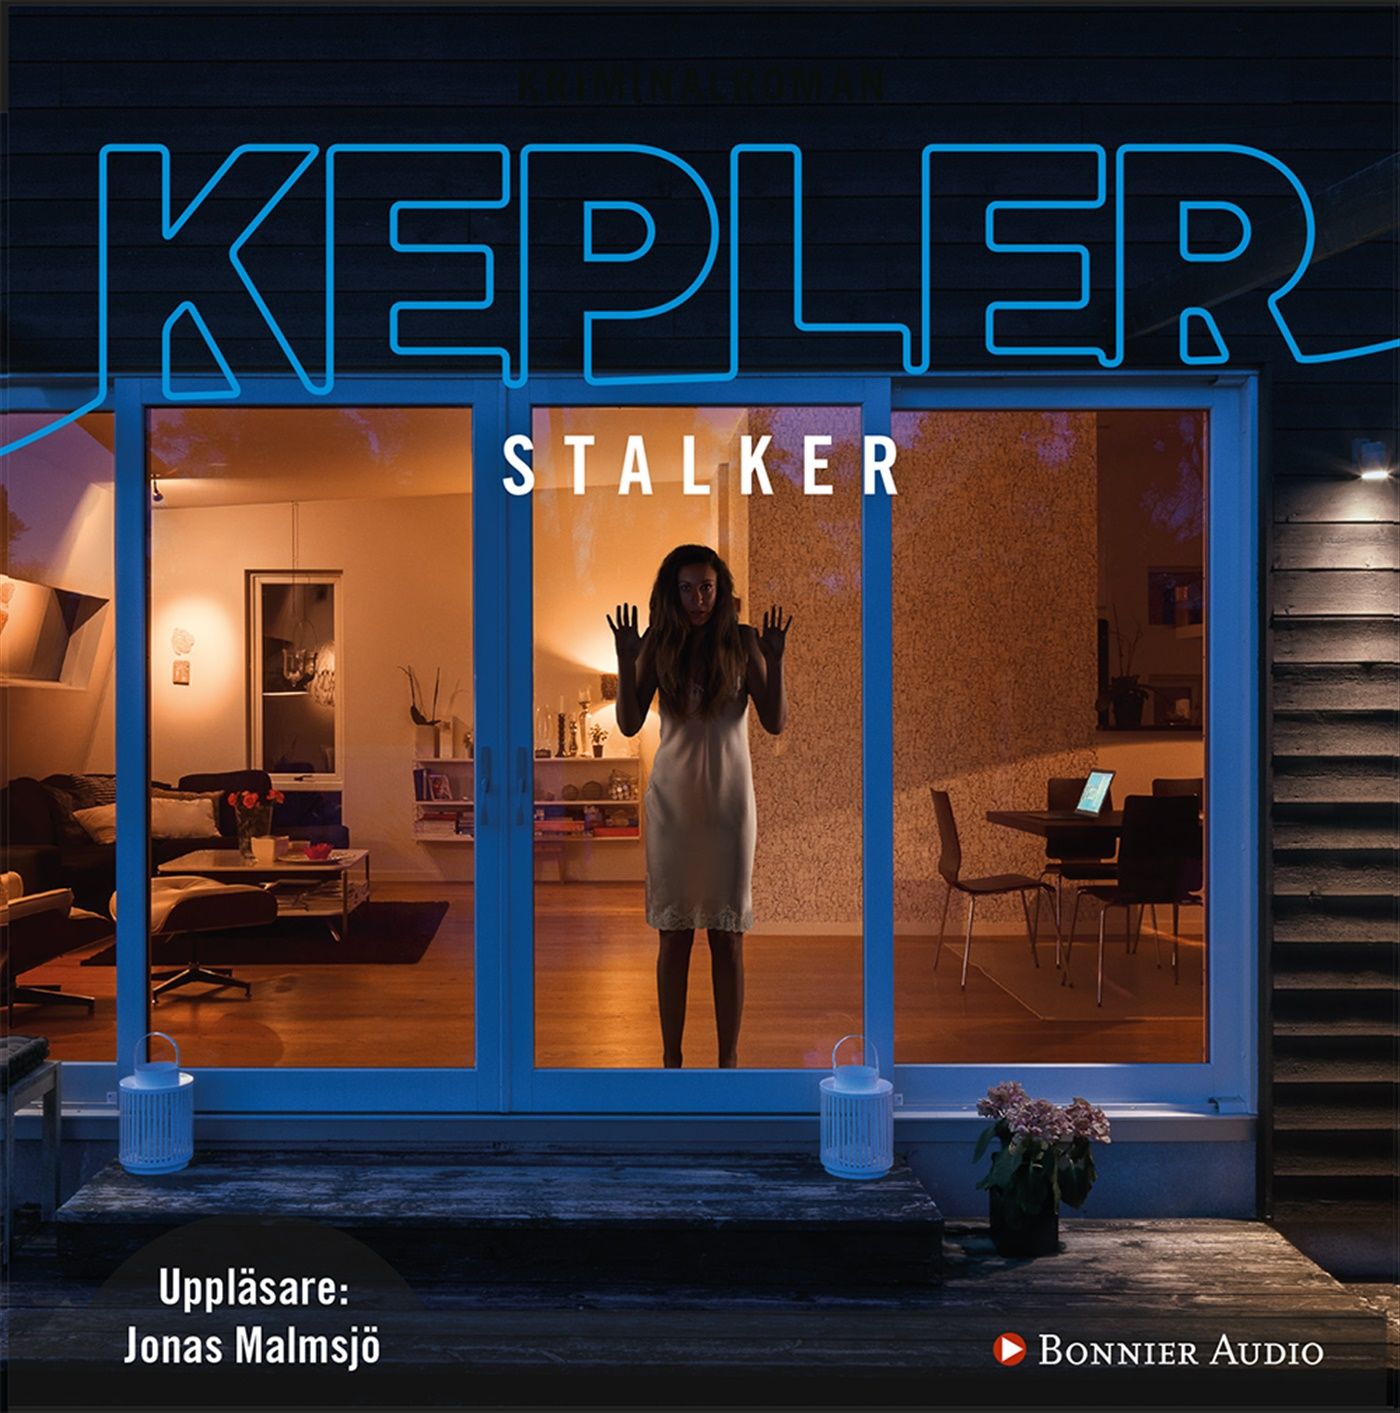 Stalker, lydbog af Lars Kepler